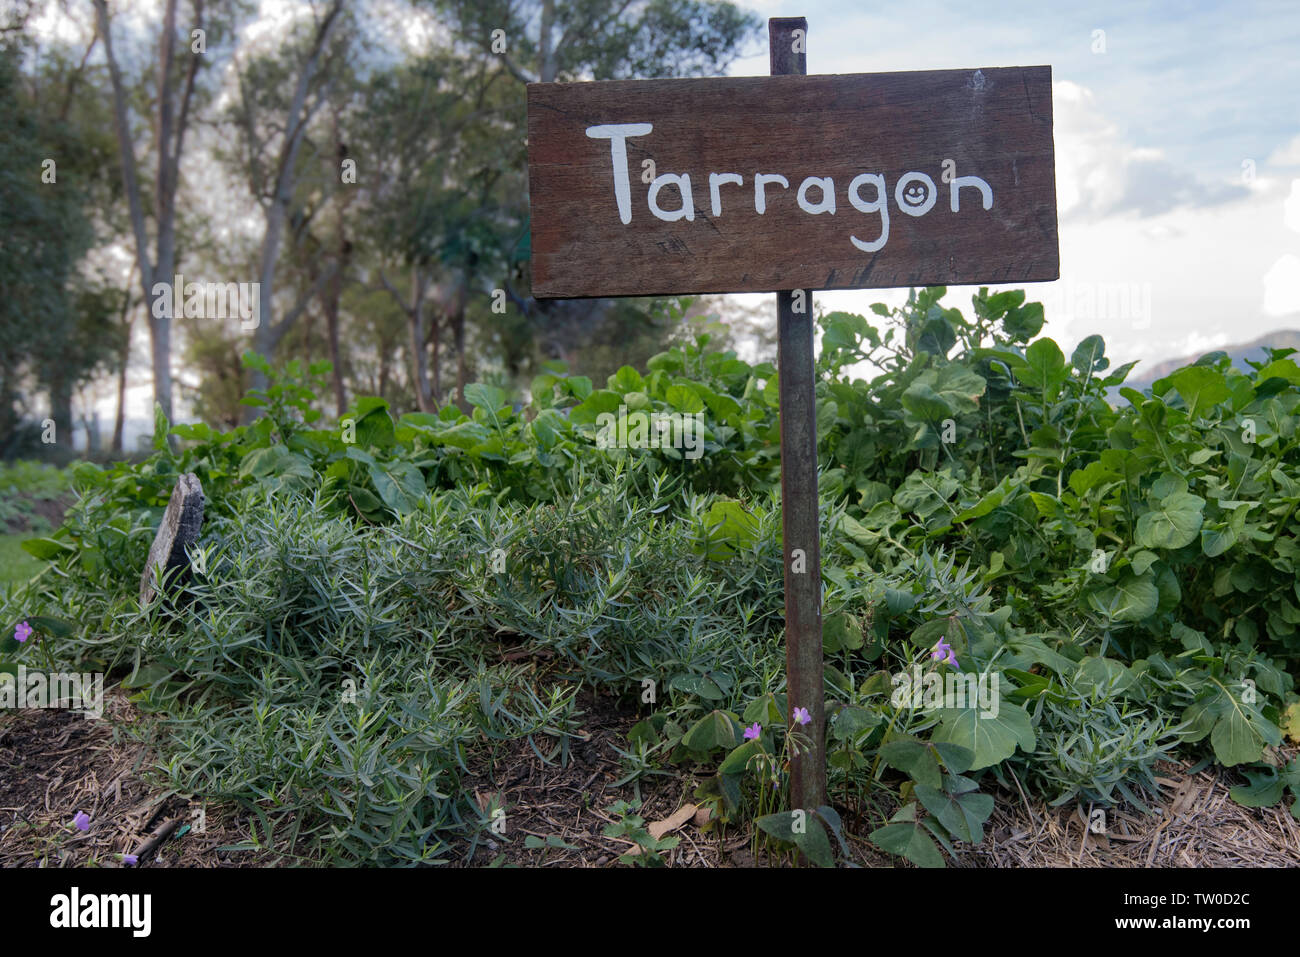 Ein Garten voller Estragon oder Estragon (Artemisia dracunculus) und Rakete oder Arugul (Eruca sativa) und eine Hand Zeichen bemalt mit Estragon auf geschrieben Stockfoto